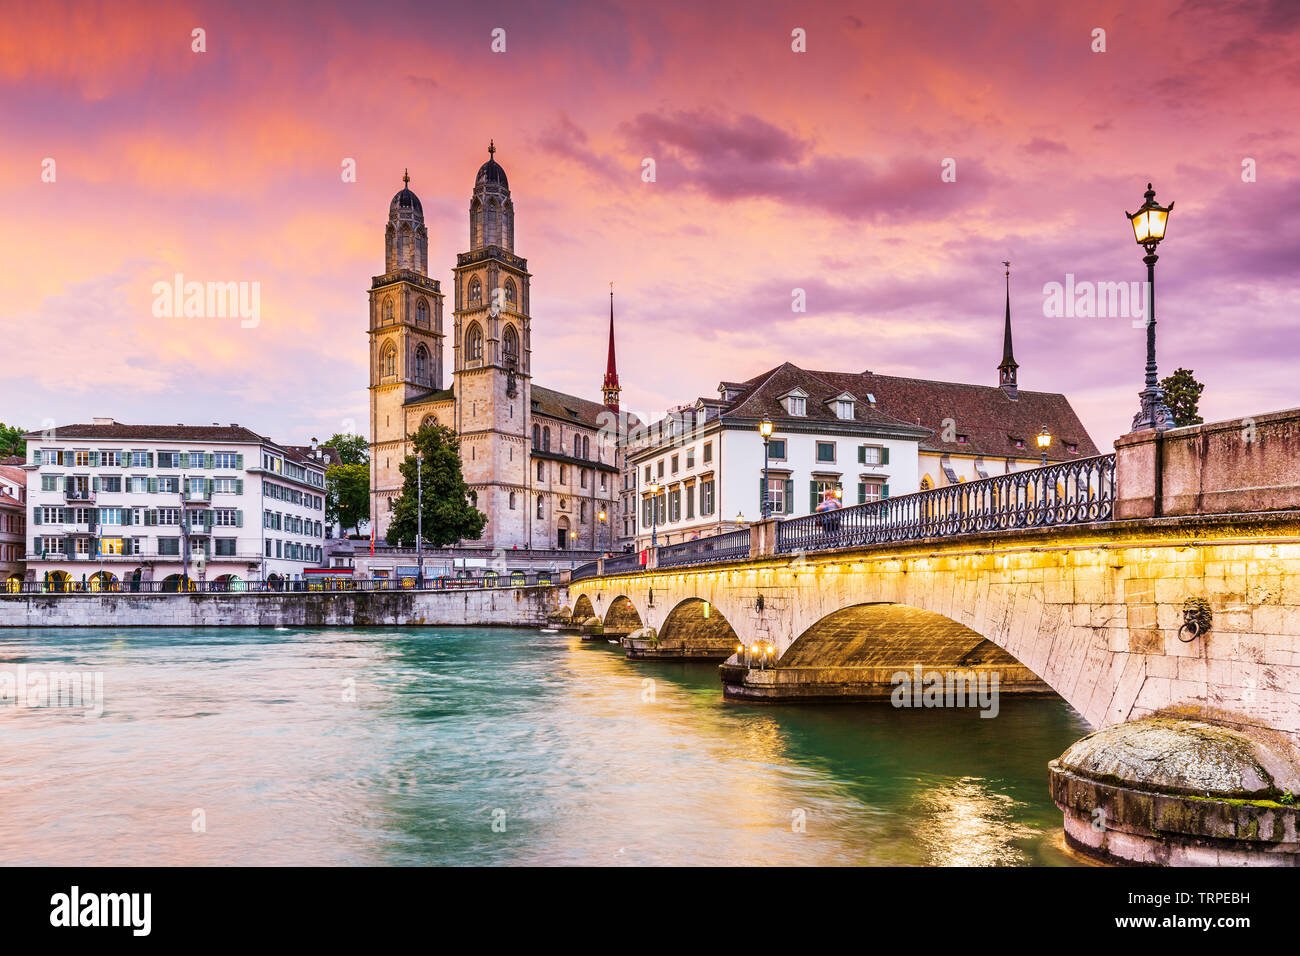 Zurigo, Svizzera. Vista del centro storico della città con la famosa chiesa di Grossmunster, sul fiume Limmat. Foto Stock